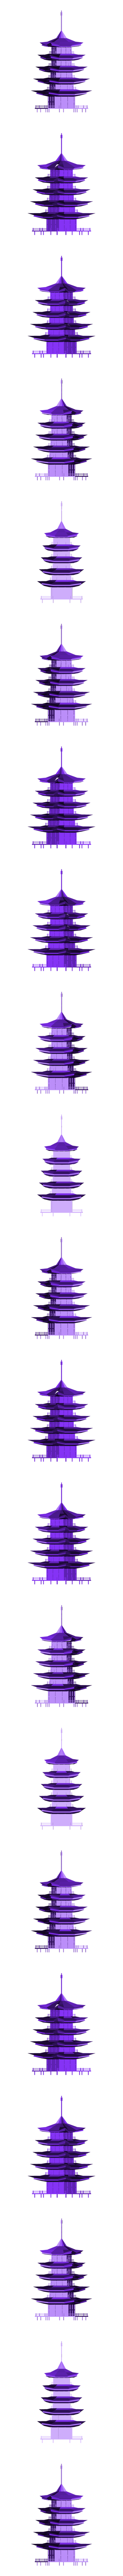 Pagoda.obj OBJ-Datei Pagoda kostenlos・Design für 3D-Drucker zum herunterladen, Colorful3D